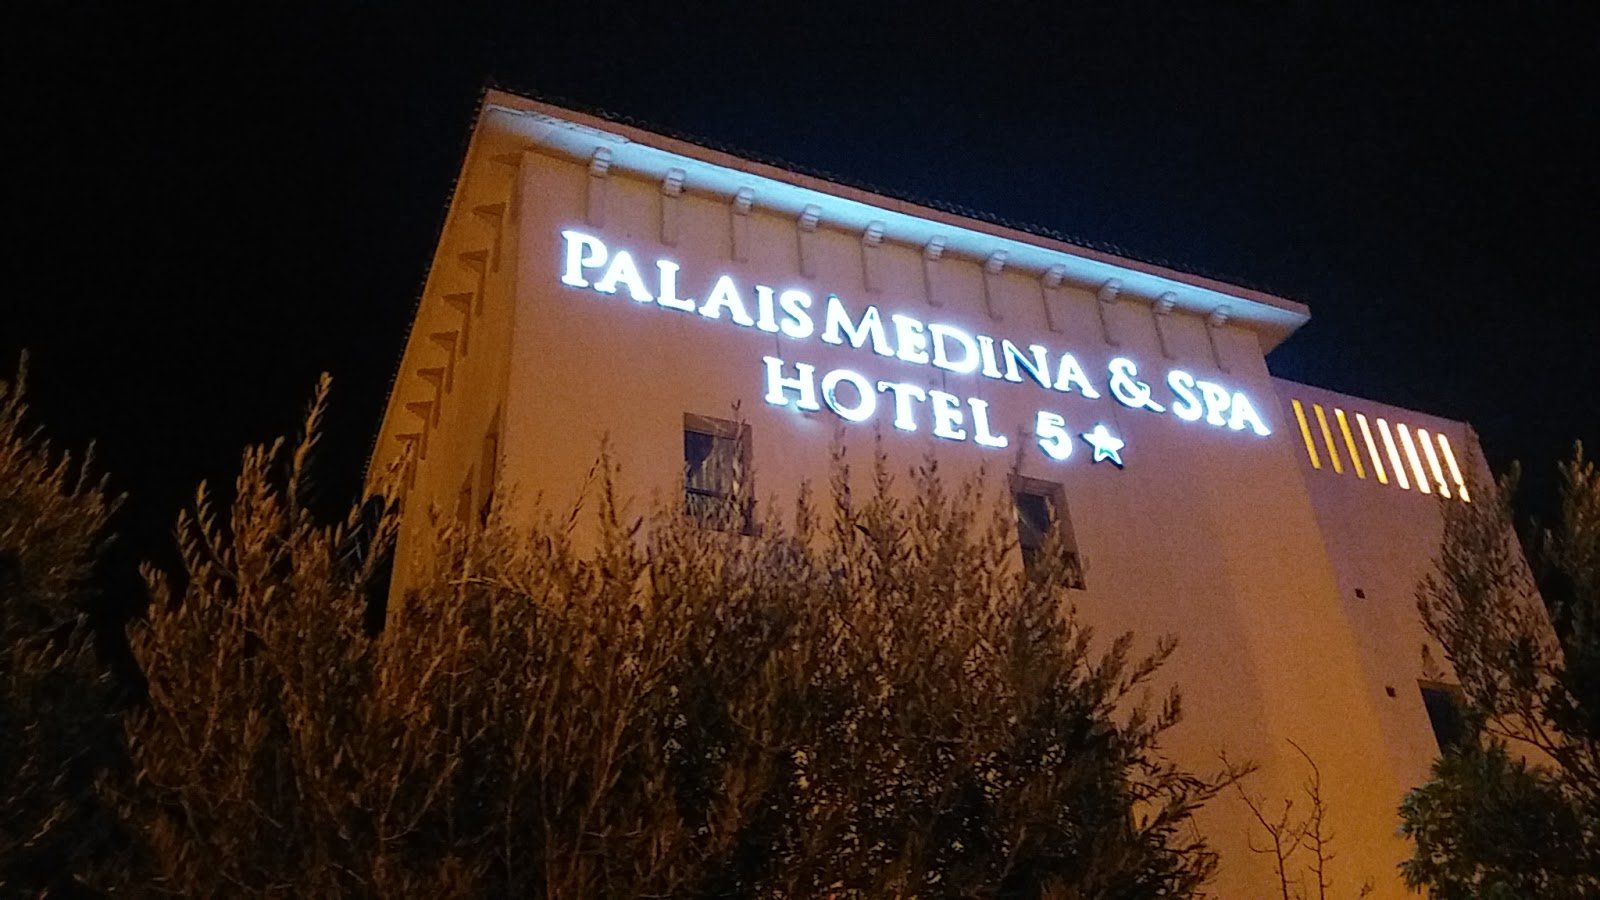 Palais Medina & Spa Hotel